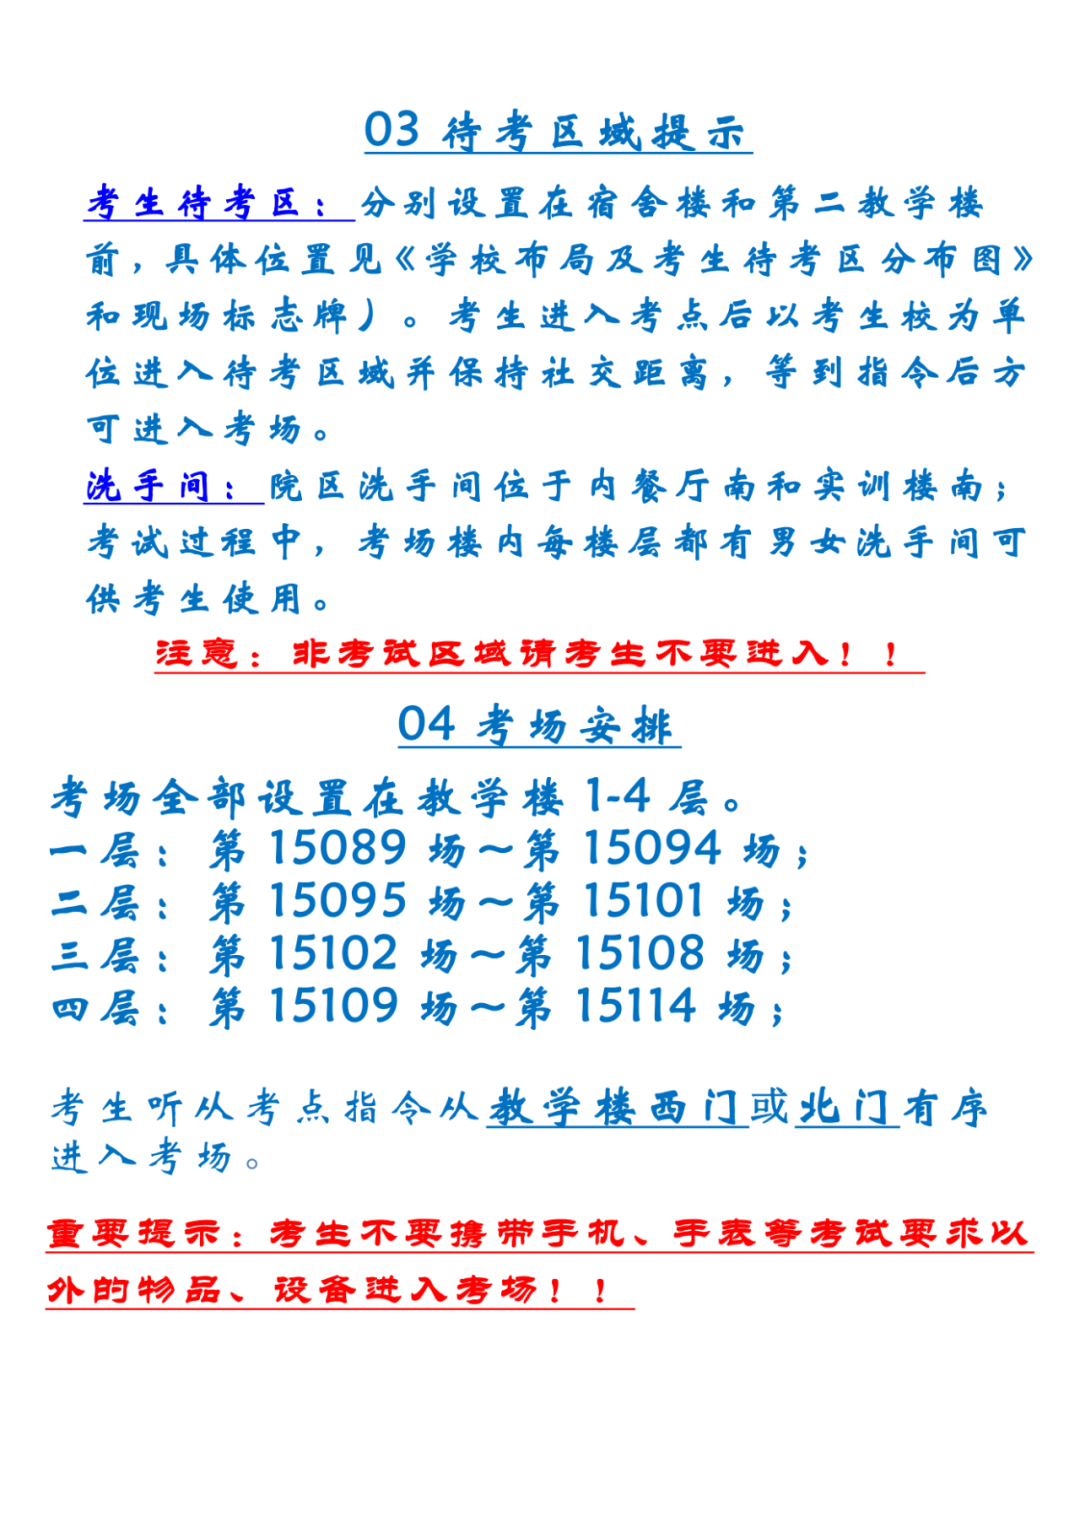 2022年天津武清区中考考点考场示意图(图49)